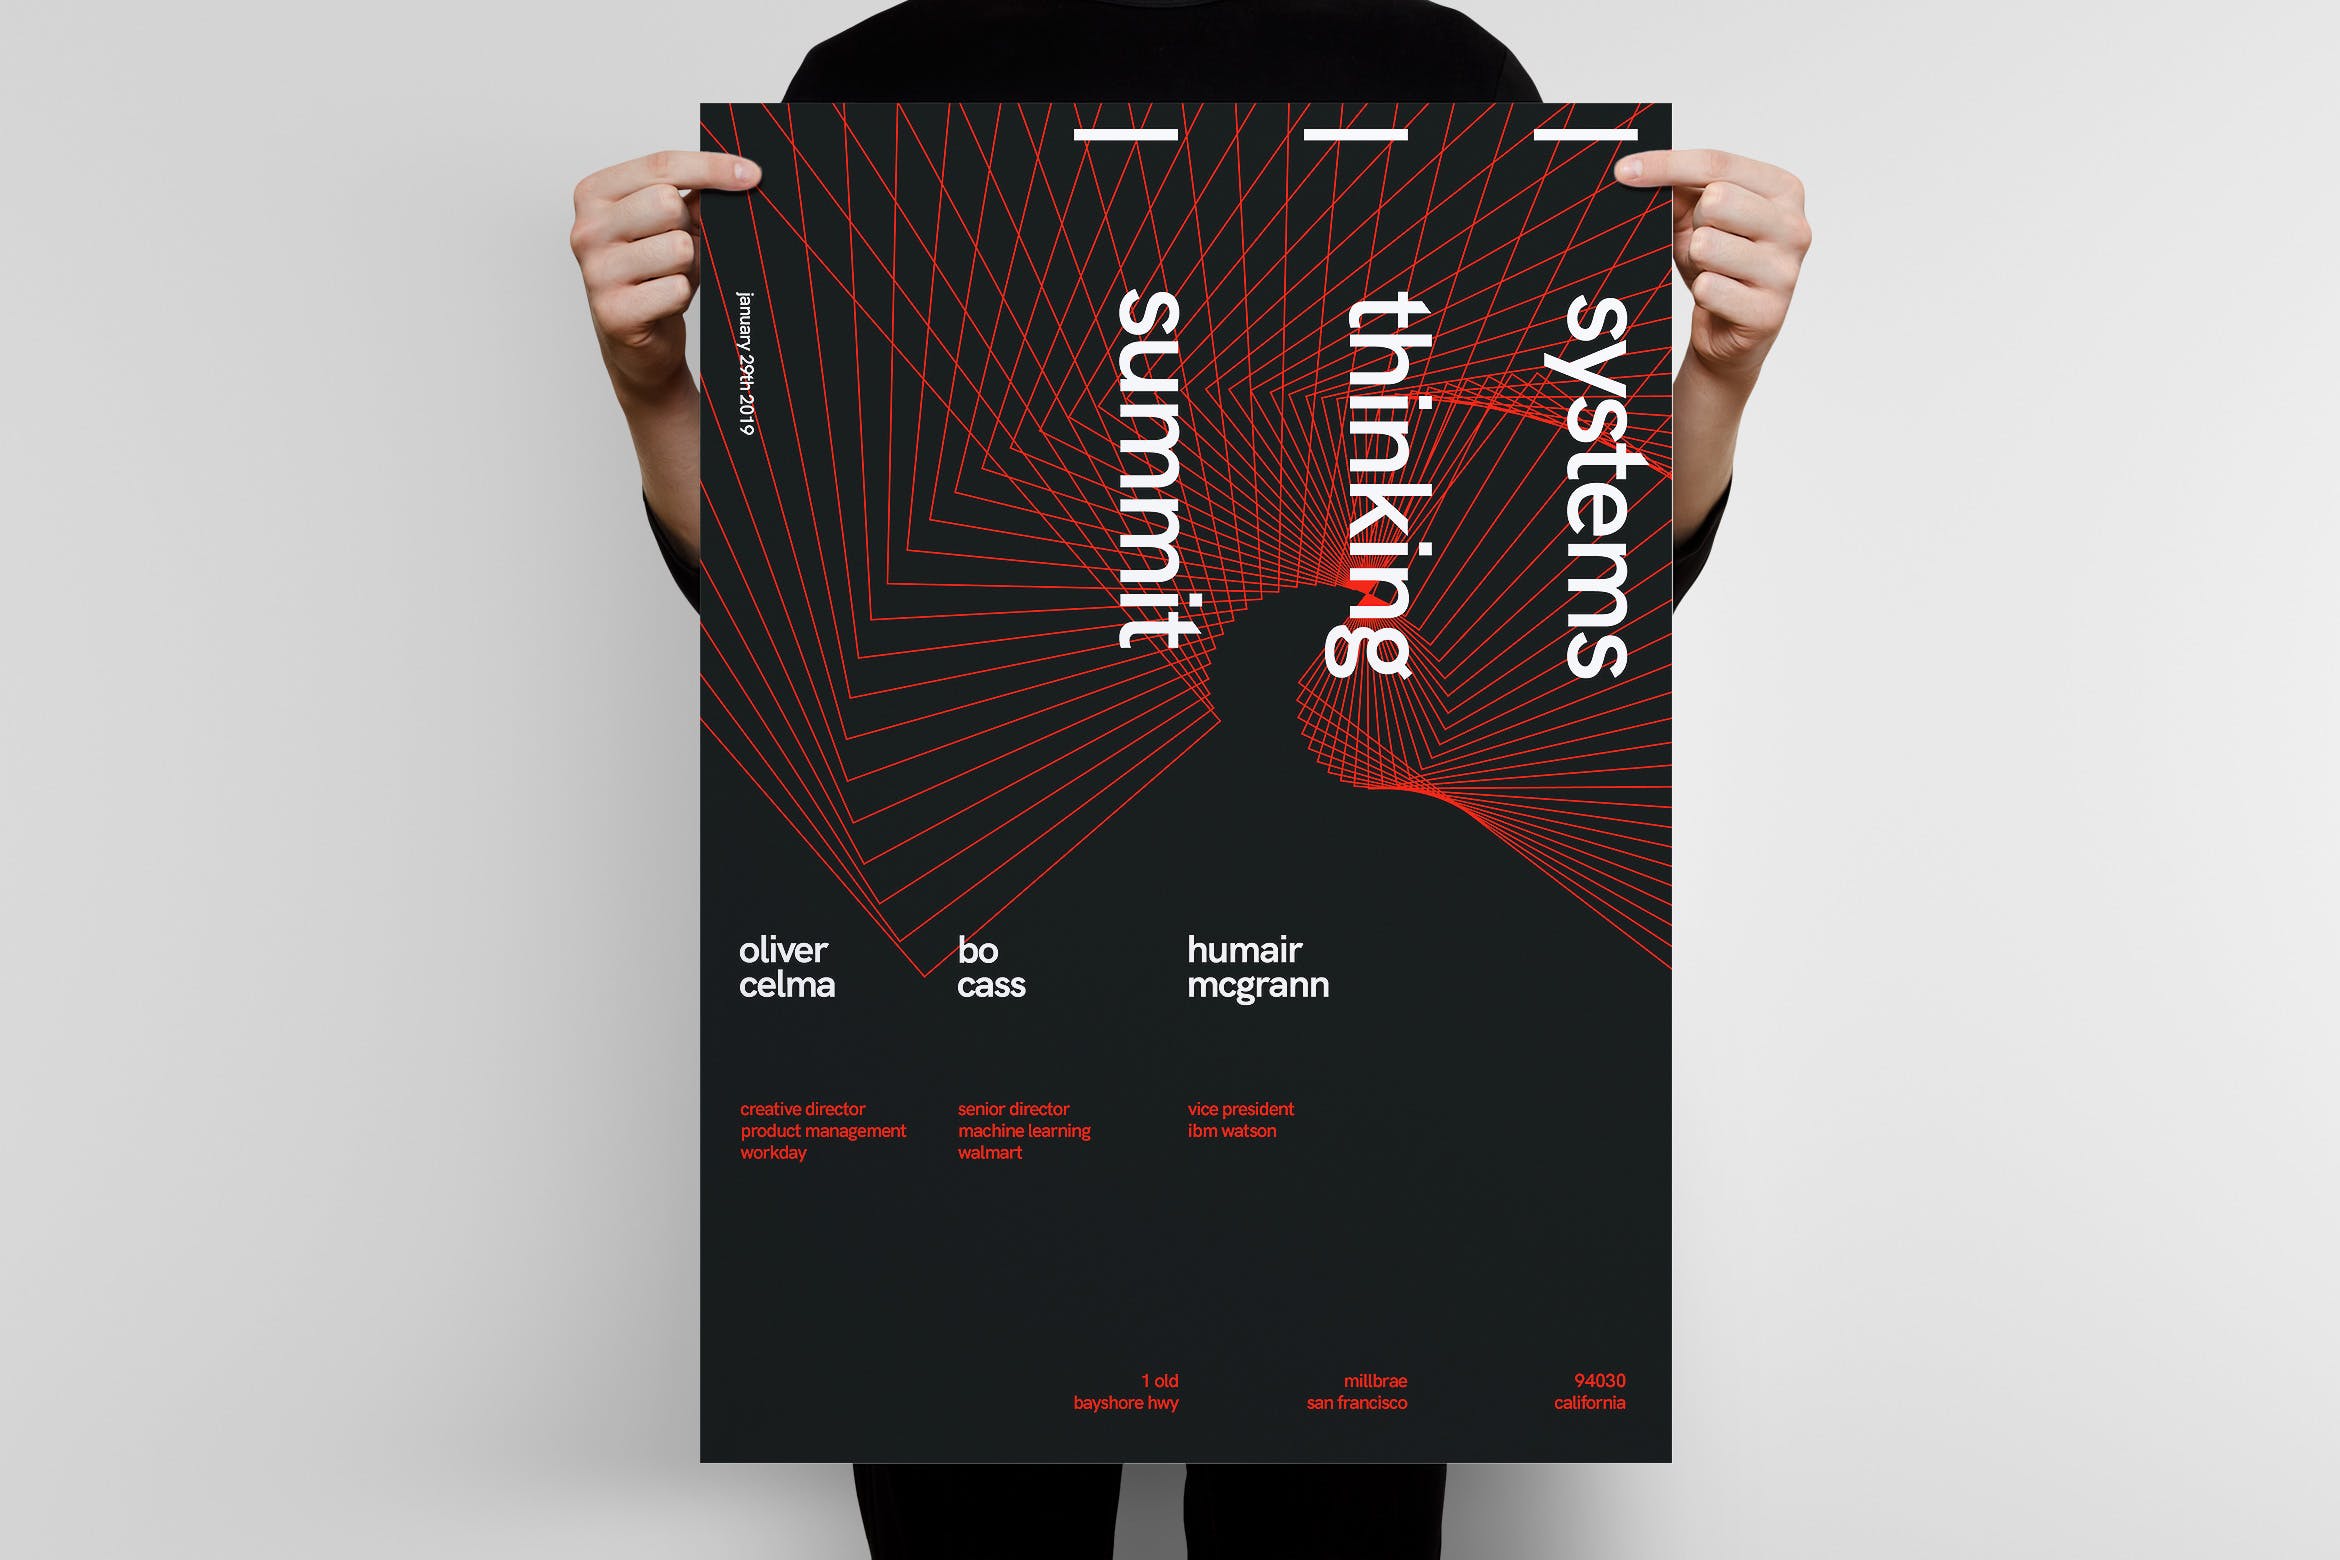 行业峰会大型会议宣传海报PSD素材素材库精选模板v2 Systems Thinking Summit Poster Template 2插图